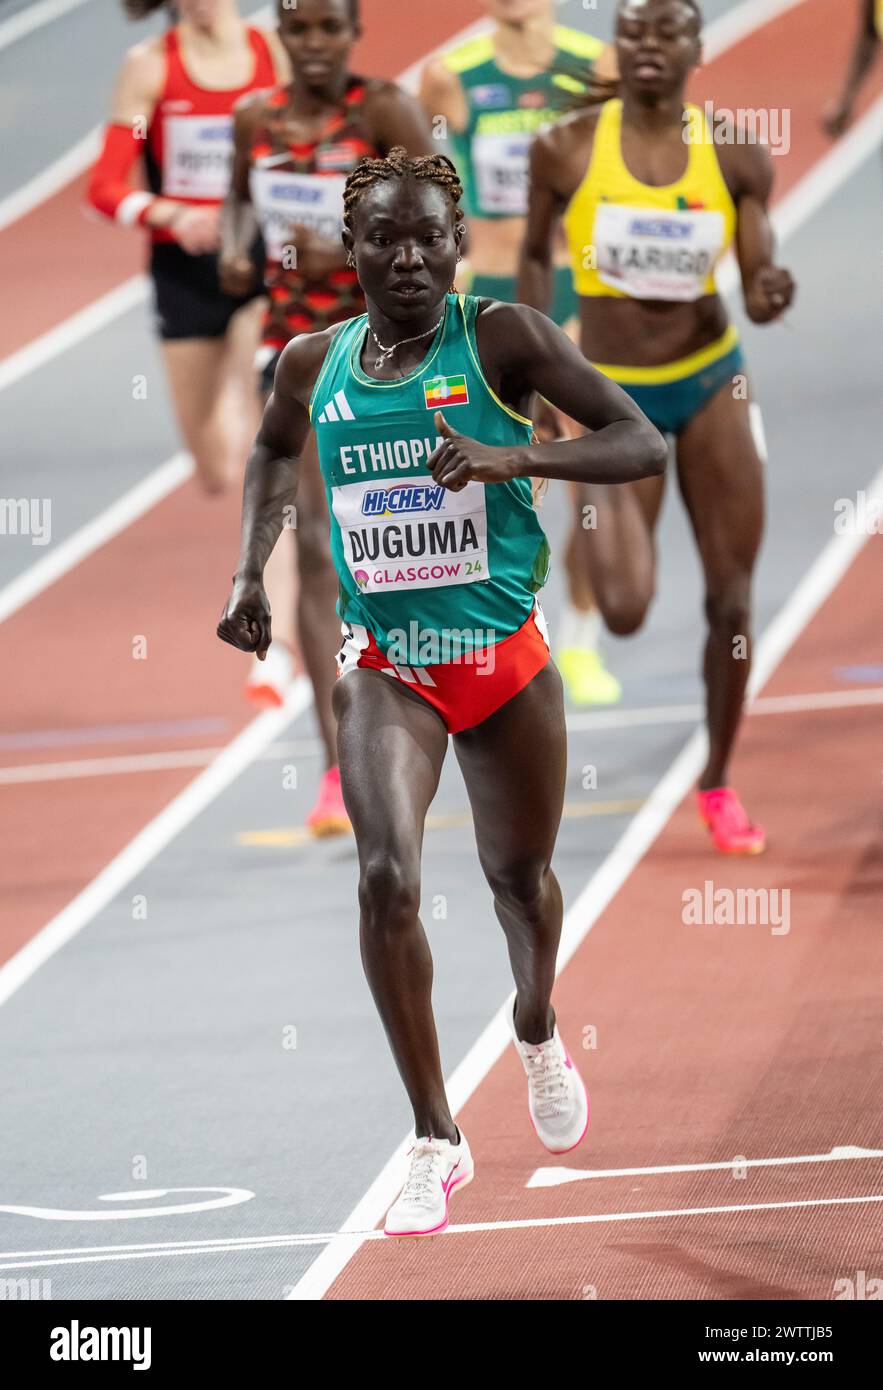 Tsige Duguma, Etiopia, gareggia nei 800 m di manche femminili ai Campionati del mondo di atletica leggera indoor, Emirates Arena, Glasgow, Scozia, Regno Unito. 1a/3a Foto Stock